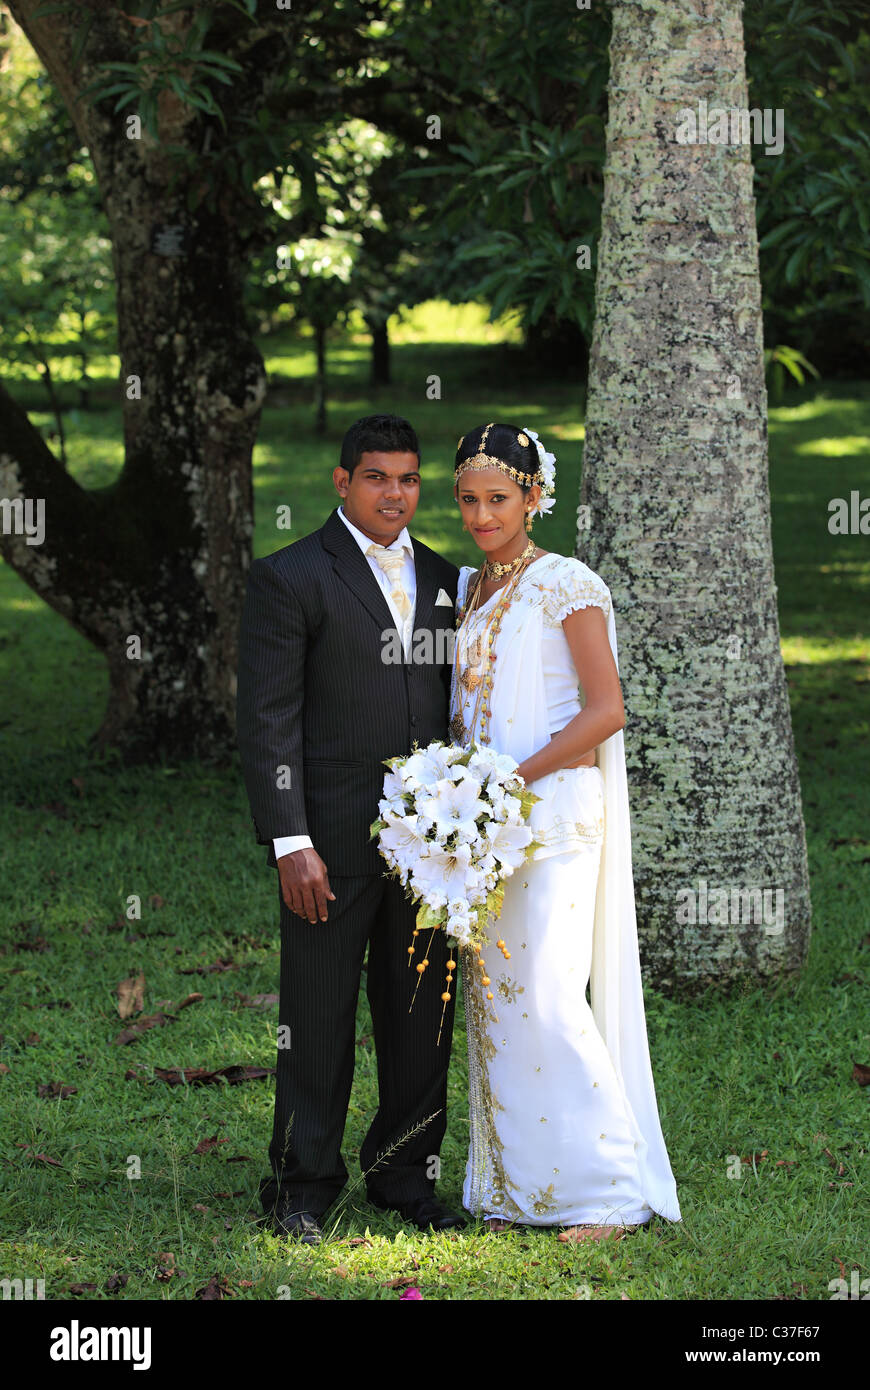 Wedding ceremony with traditional dress in Sri Lanka Asia Stock Photo -  Alamy